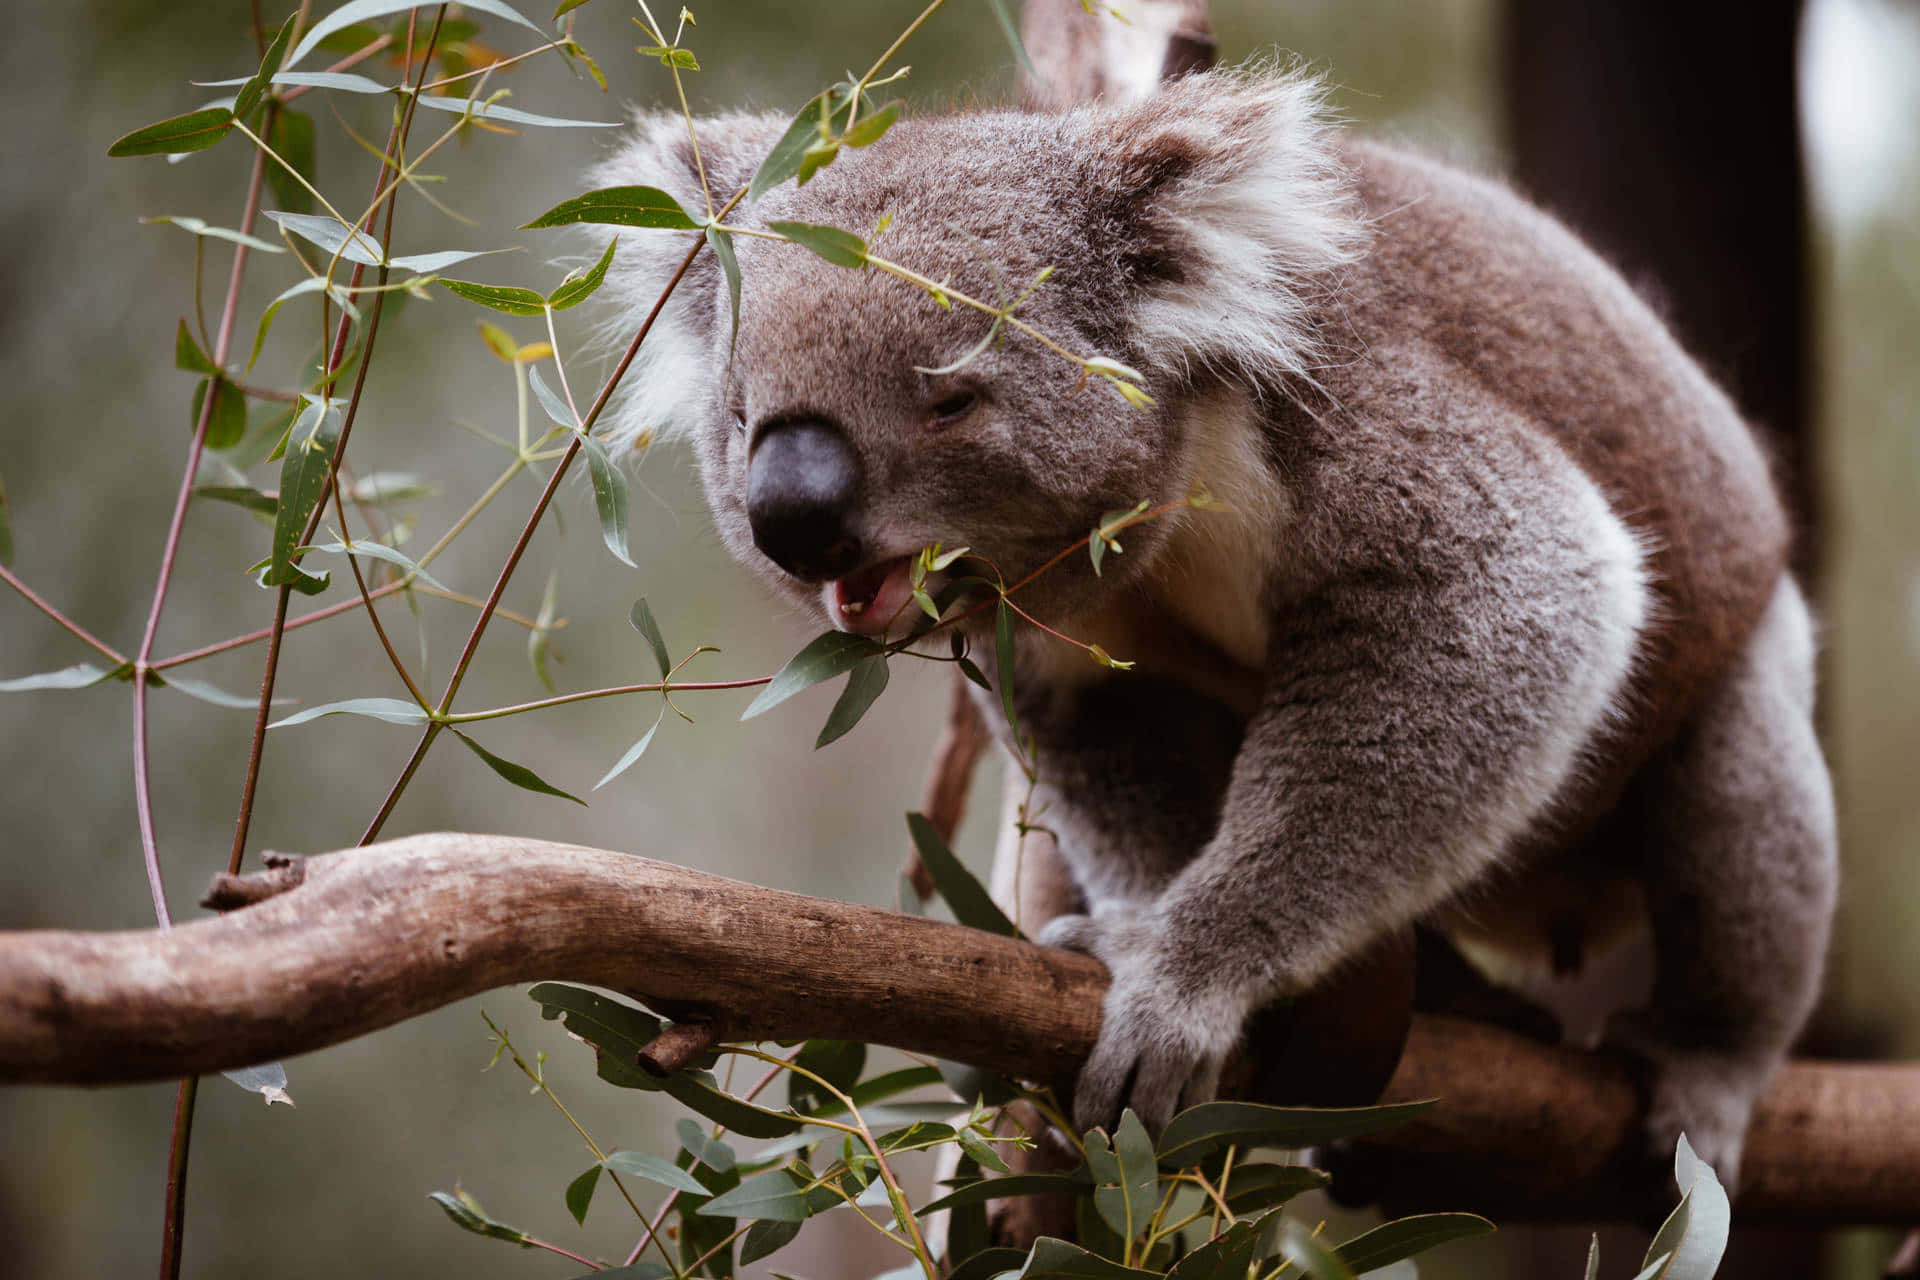 A koala amongst the eucalyptus trees